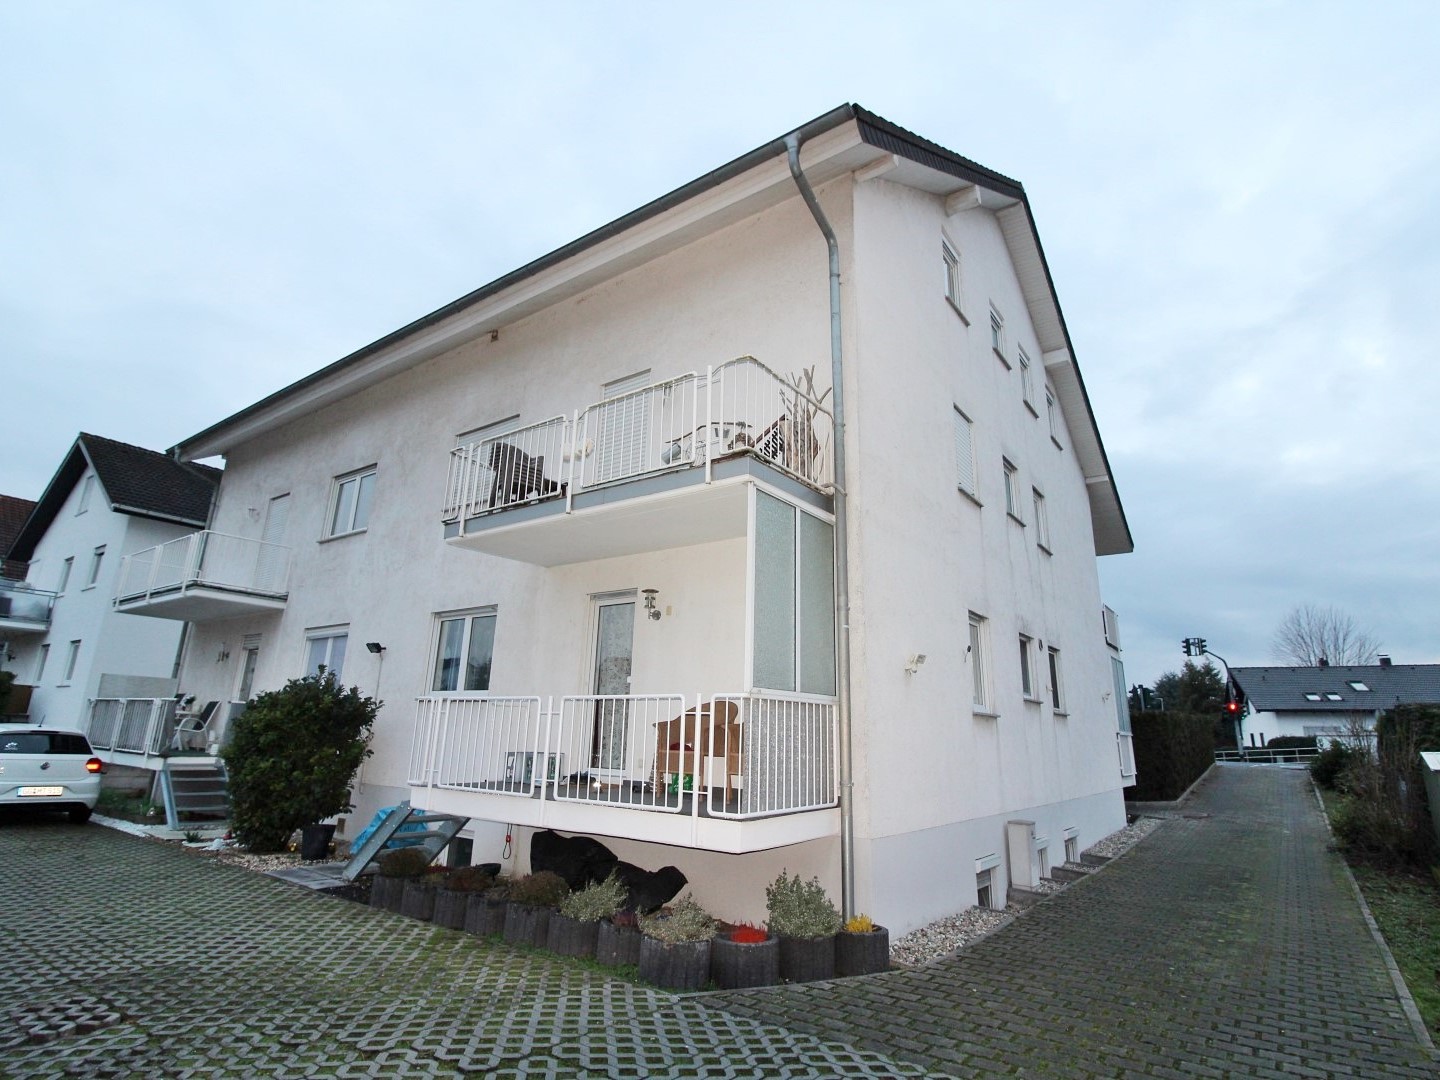 Objekt 983: Gepflegte 3-Zimmer Eigentumswohnung in Gernsheim